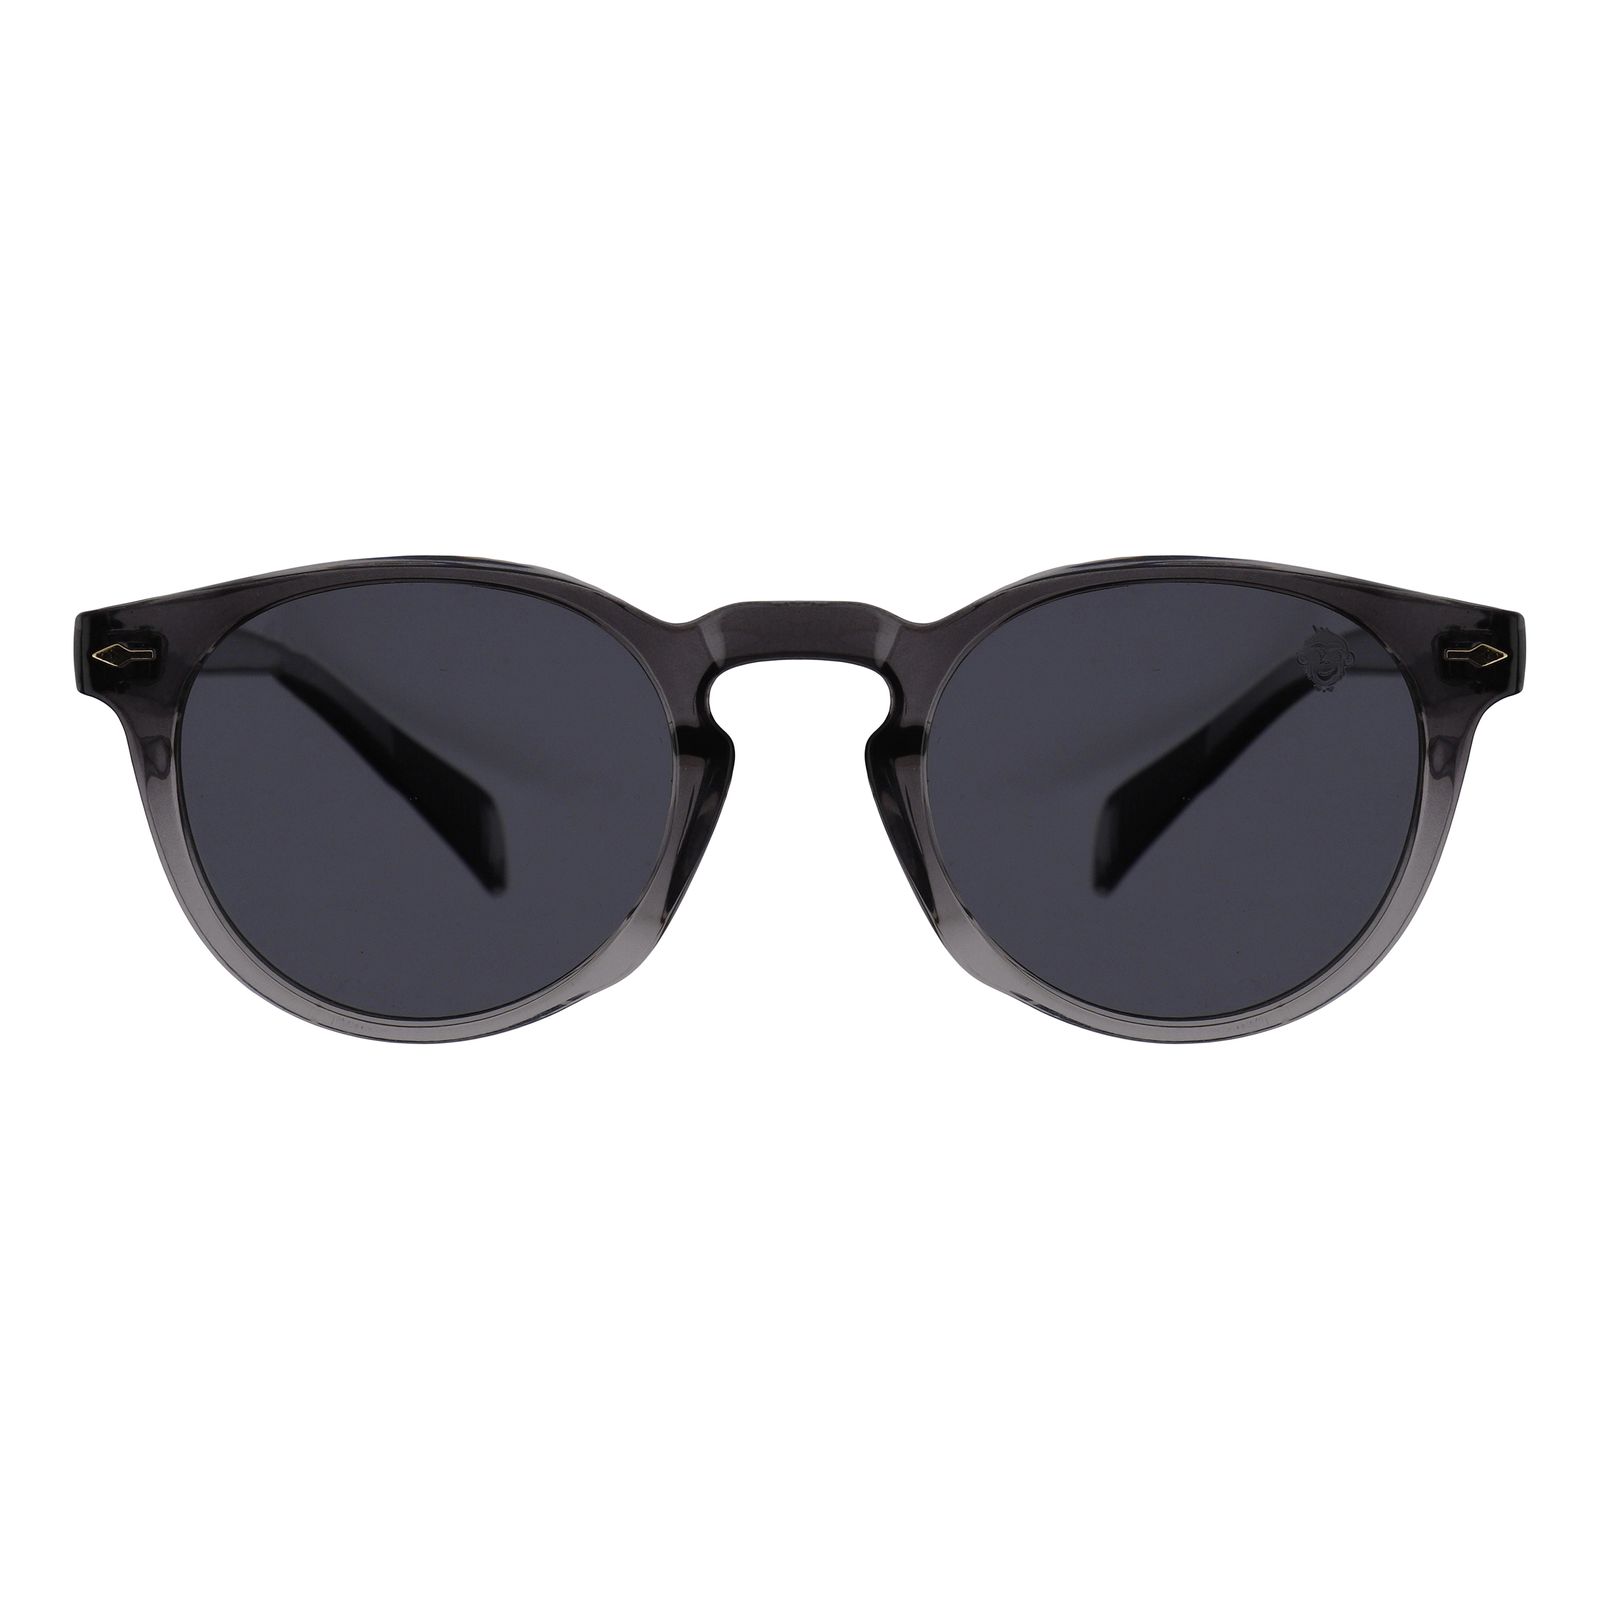 عینک آفتابی مستر مانکی مدل 6018 gr -  - 1